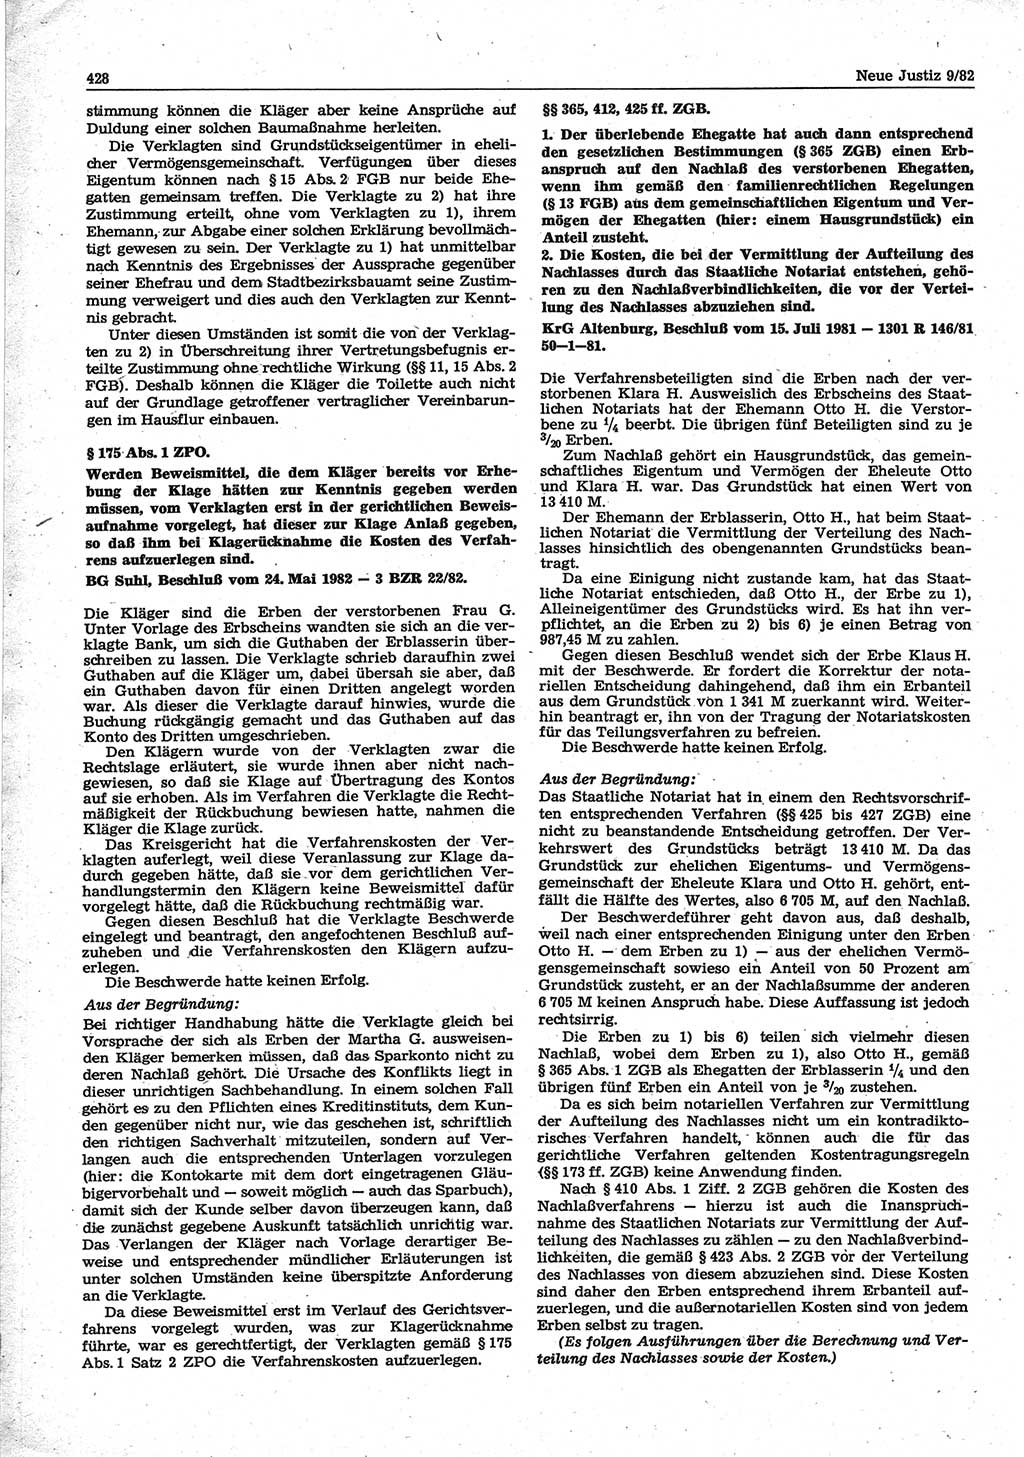 Neue Justiz (NJ), Zeitschrift für sozialistisches Recht und Gesetzlichkeit [Deutsche Demokratische Republik (DDR)], 36. Jahrgang 1982, Seite 428 (NJ DDR 1982, S. 428)